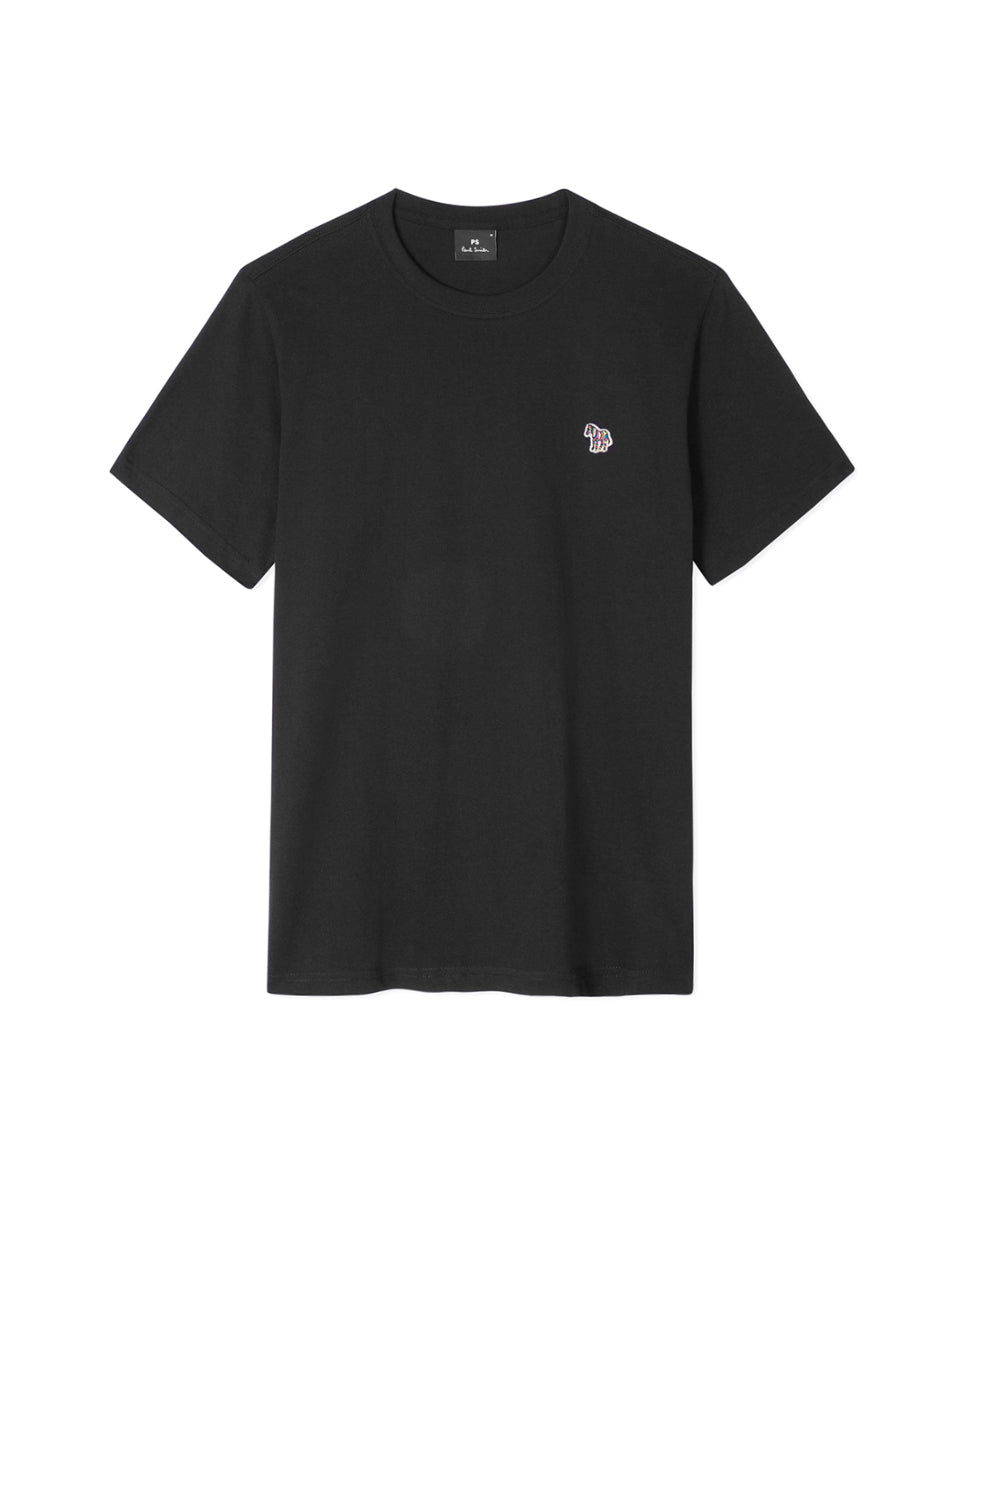  Paul Smith T-shirt Con Logo Black Uomo - 1